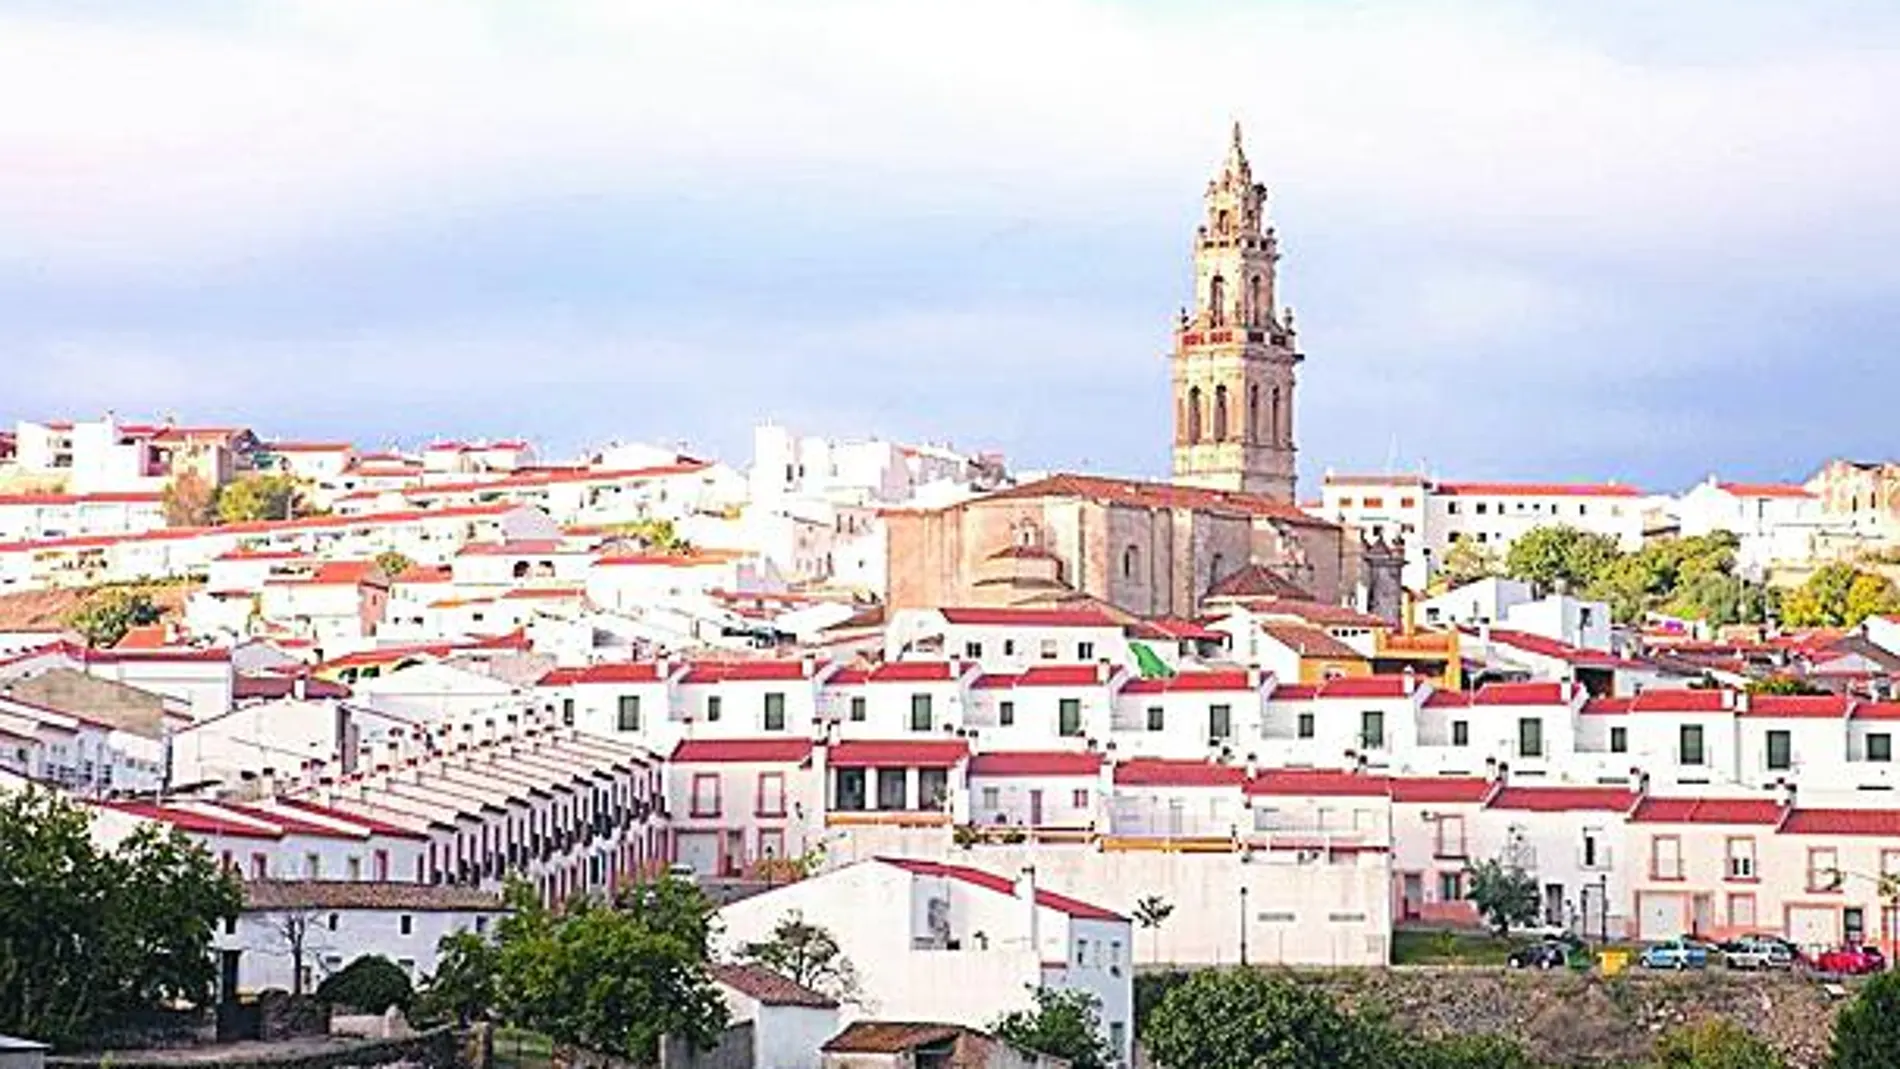 Situada entre encinares y ríos, en Jerez de los Caballeros los bellos palacios e iglesias se mezclan con el legado de los templarios y la Orden de Santiago.